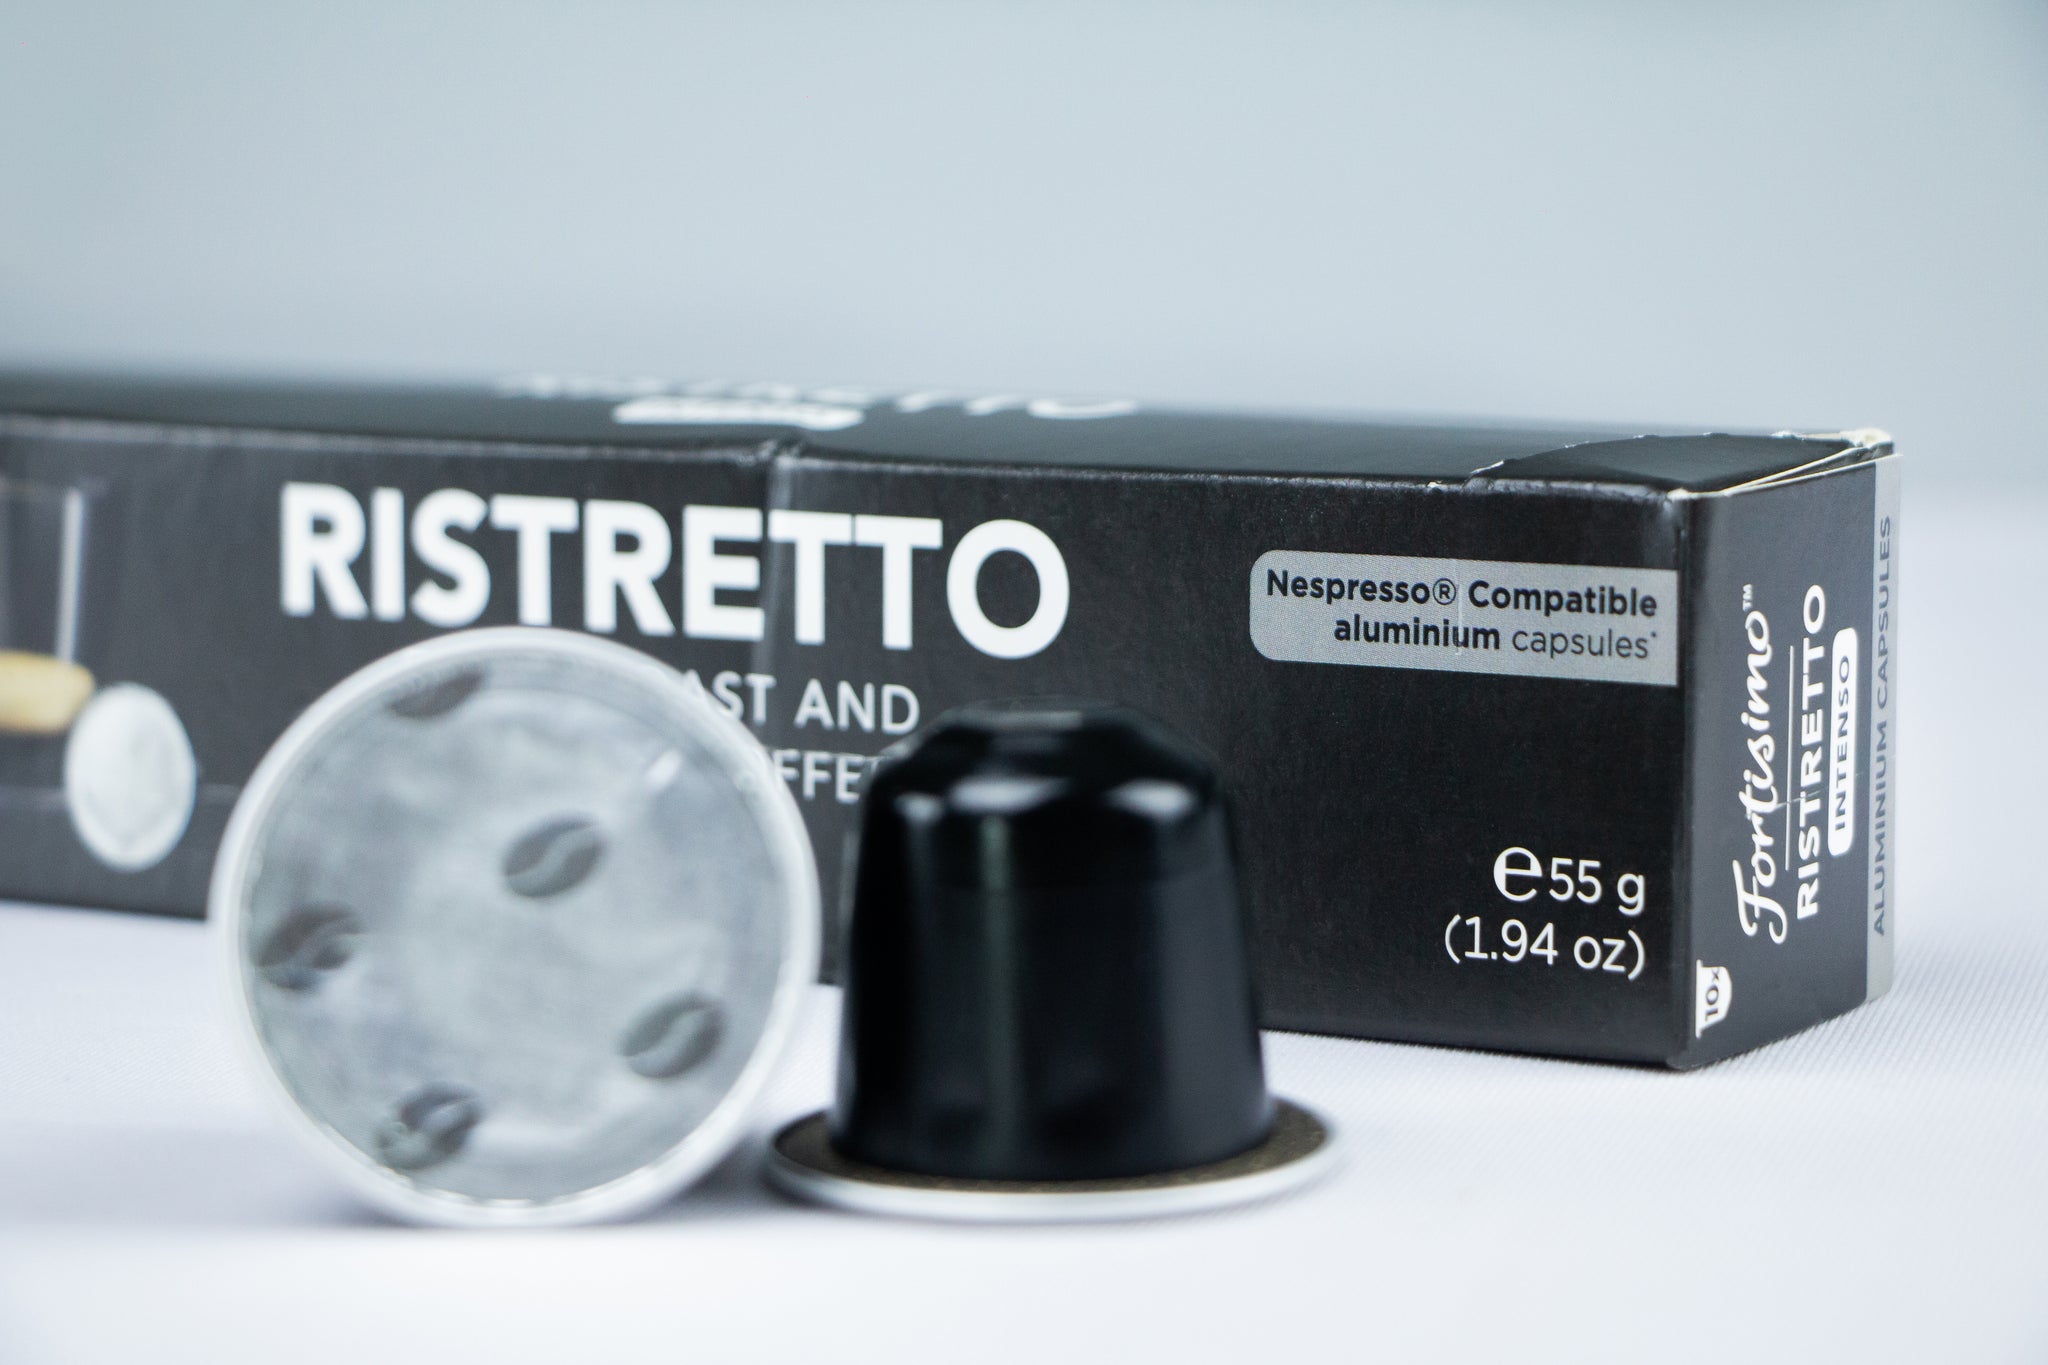 10 Aluminium Ristretto Compatible Nespresso coffee capsules